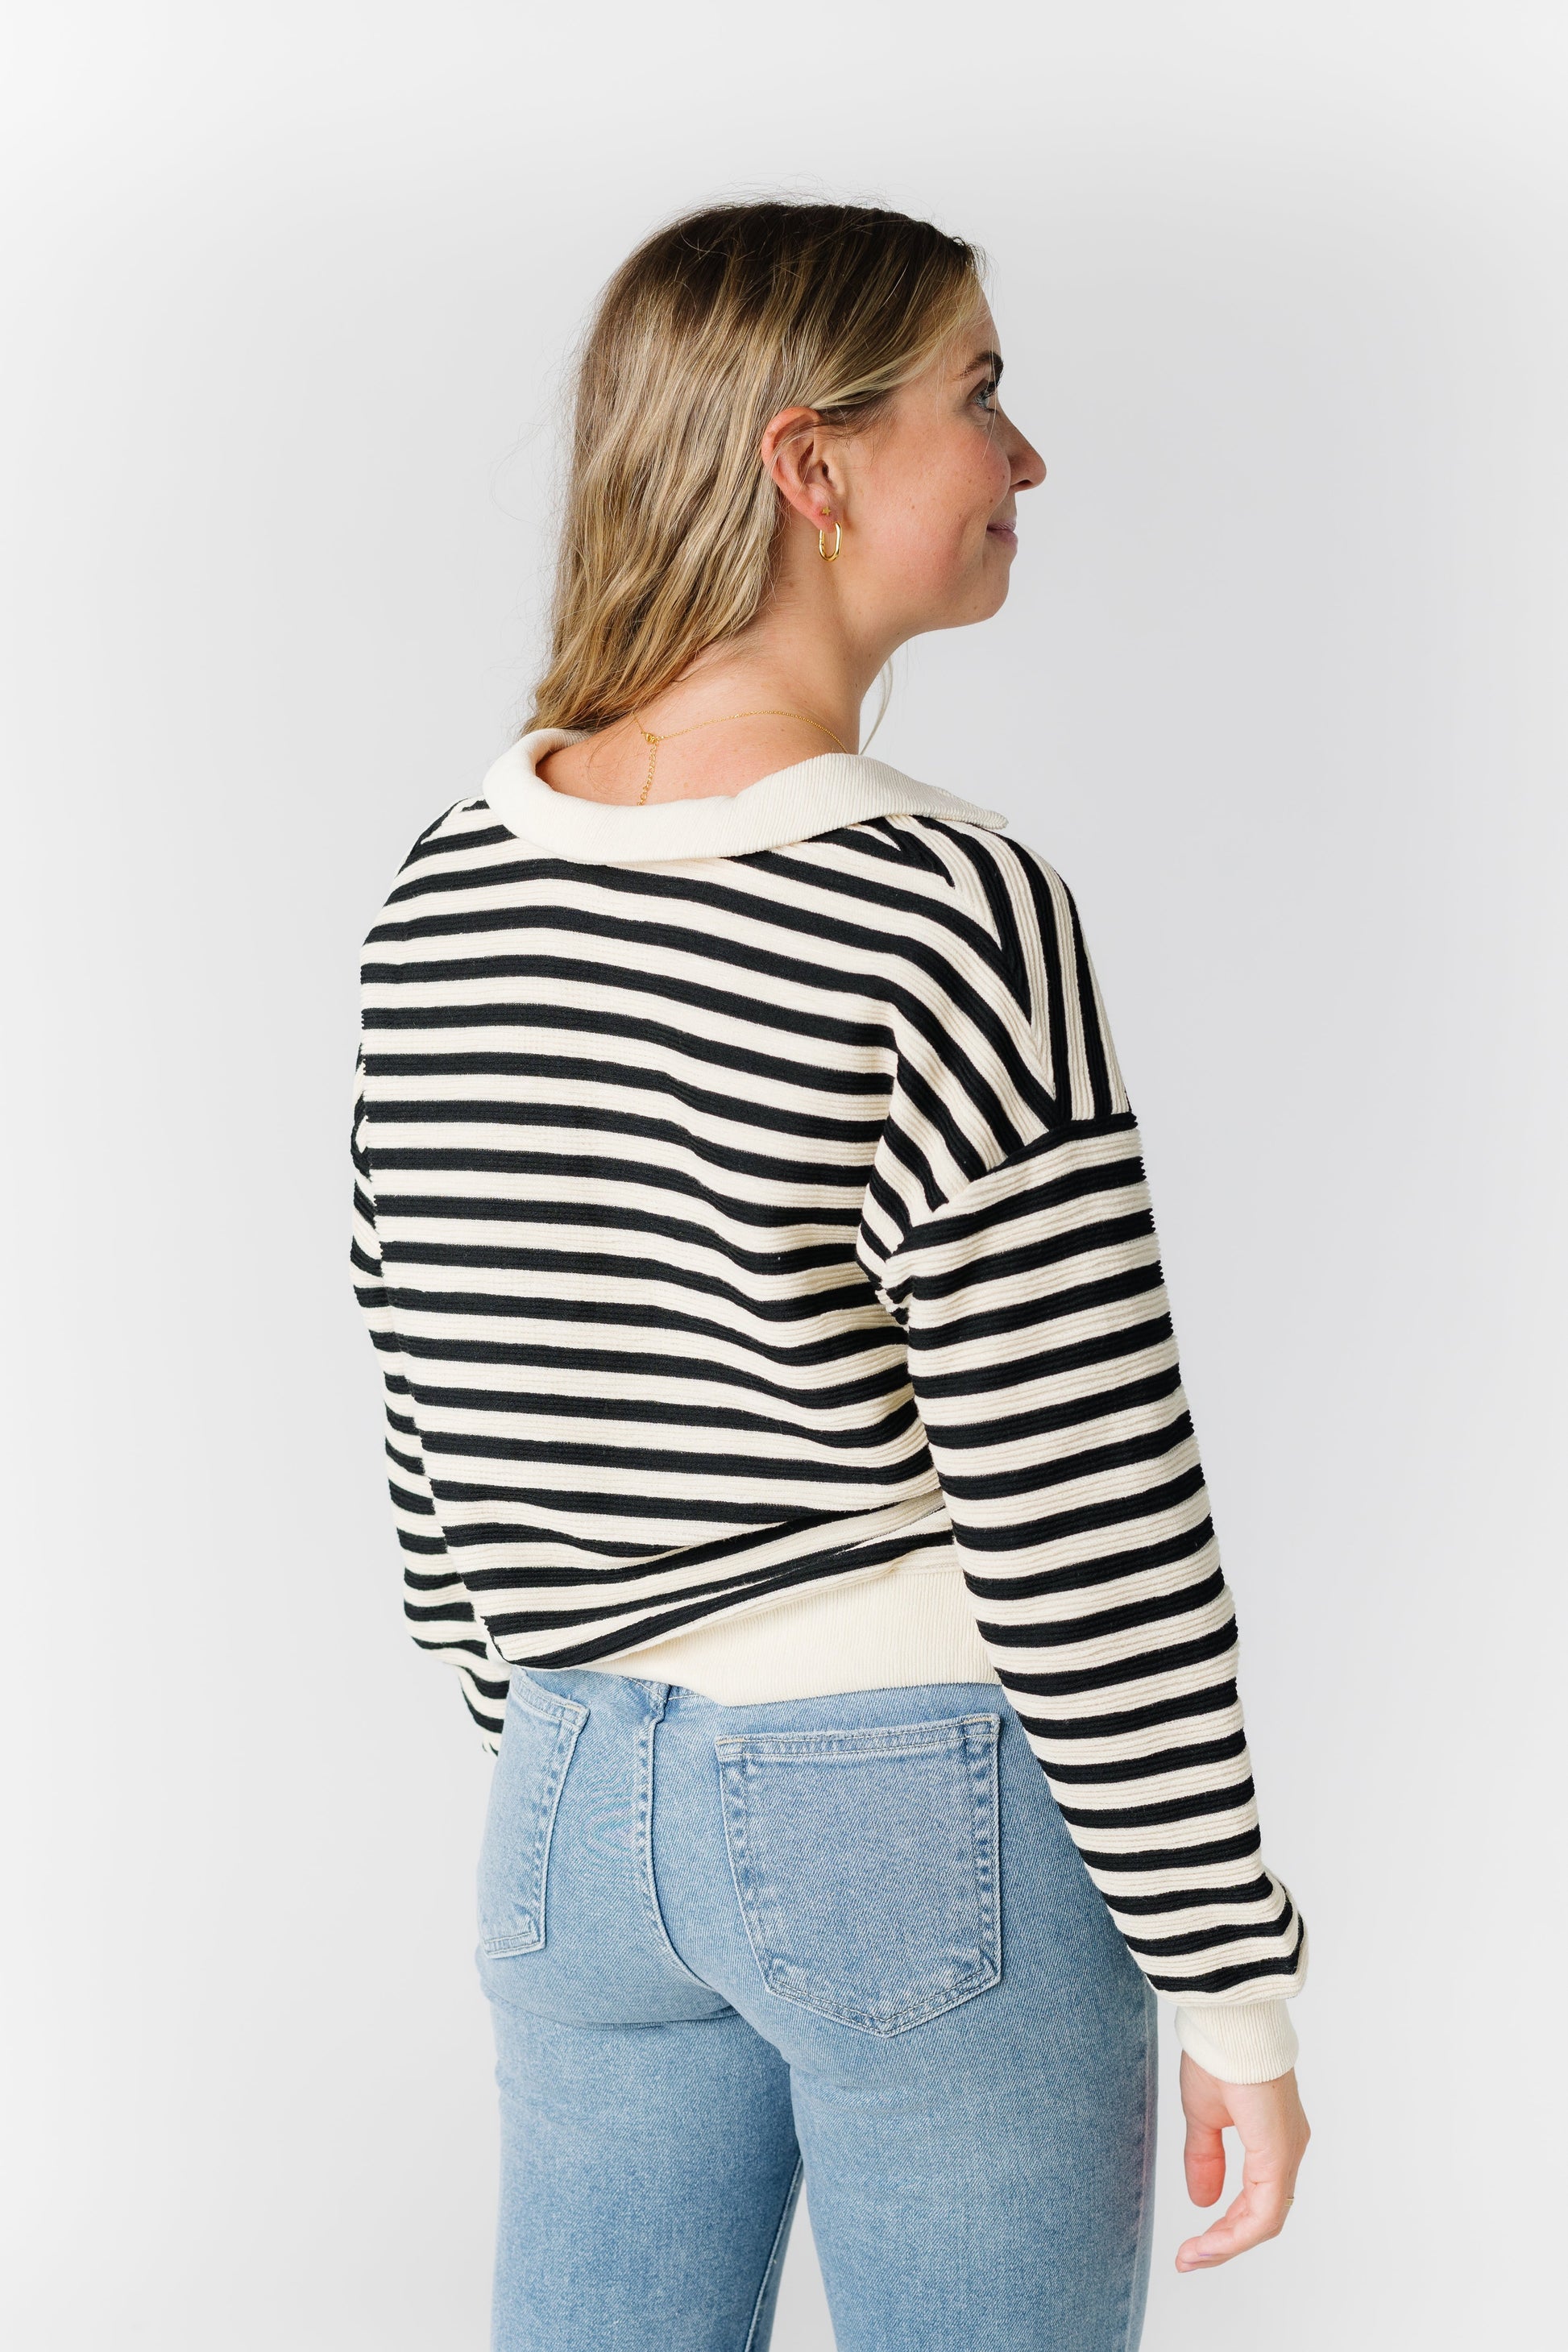 Stripe Collared Sweater WOMEN'S SWEATERS Blu Pepper 